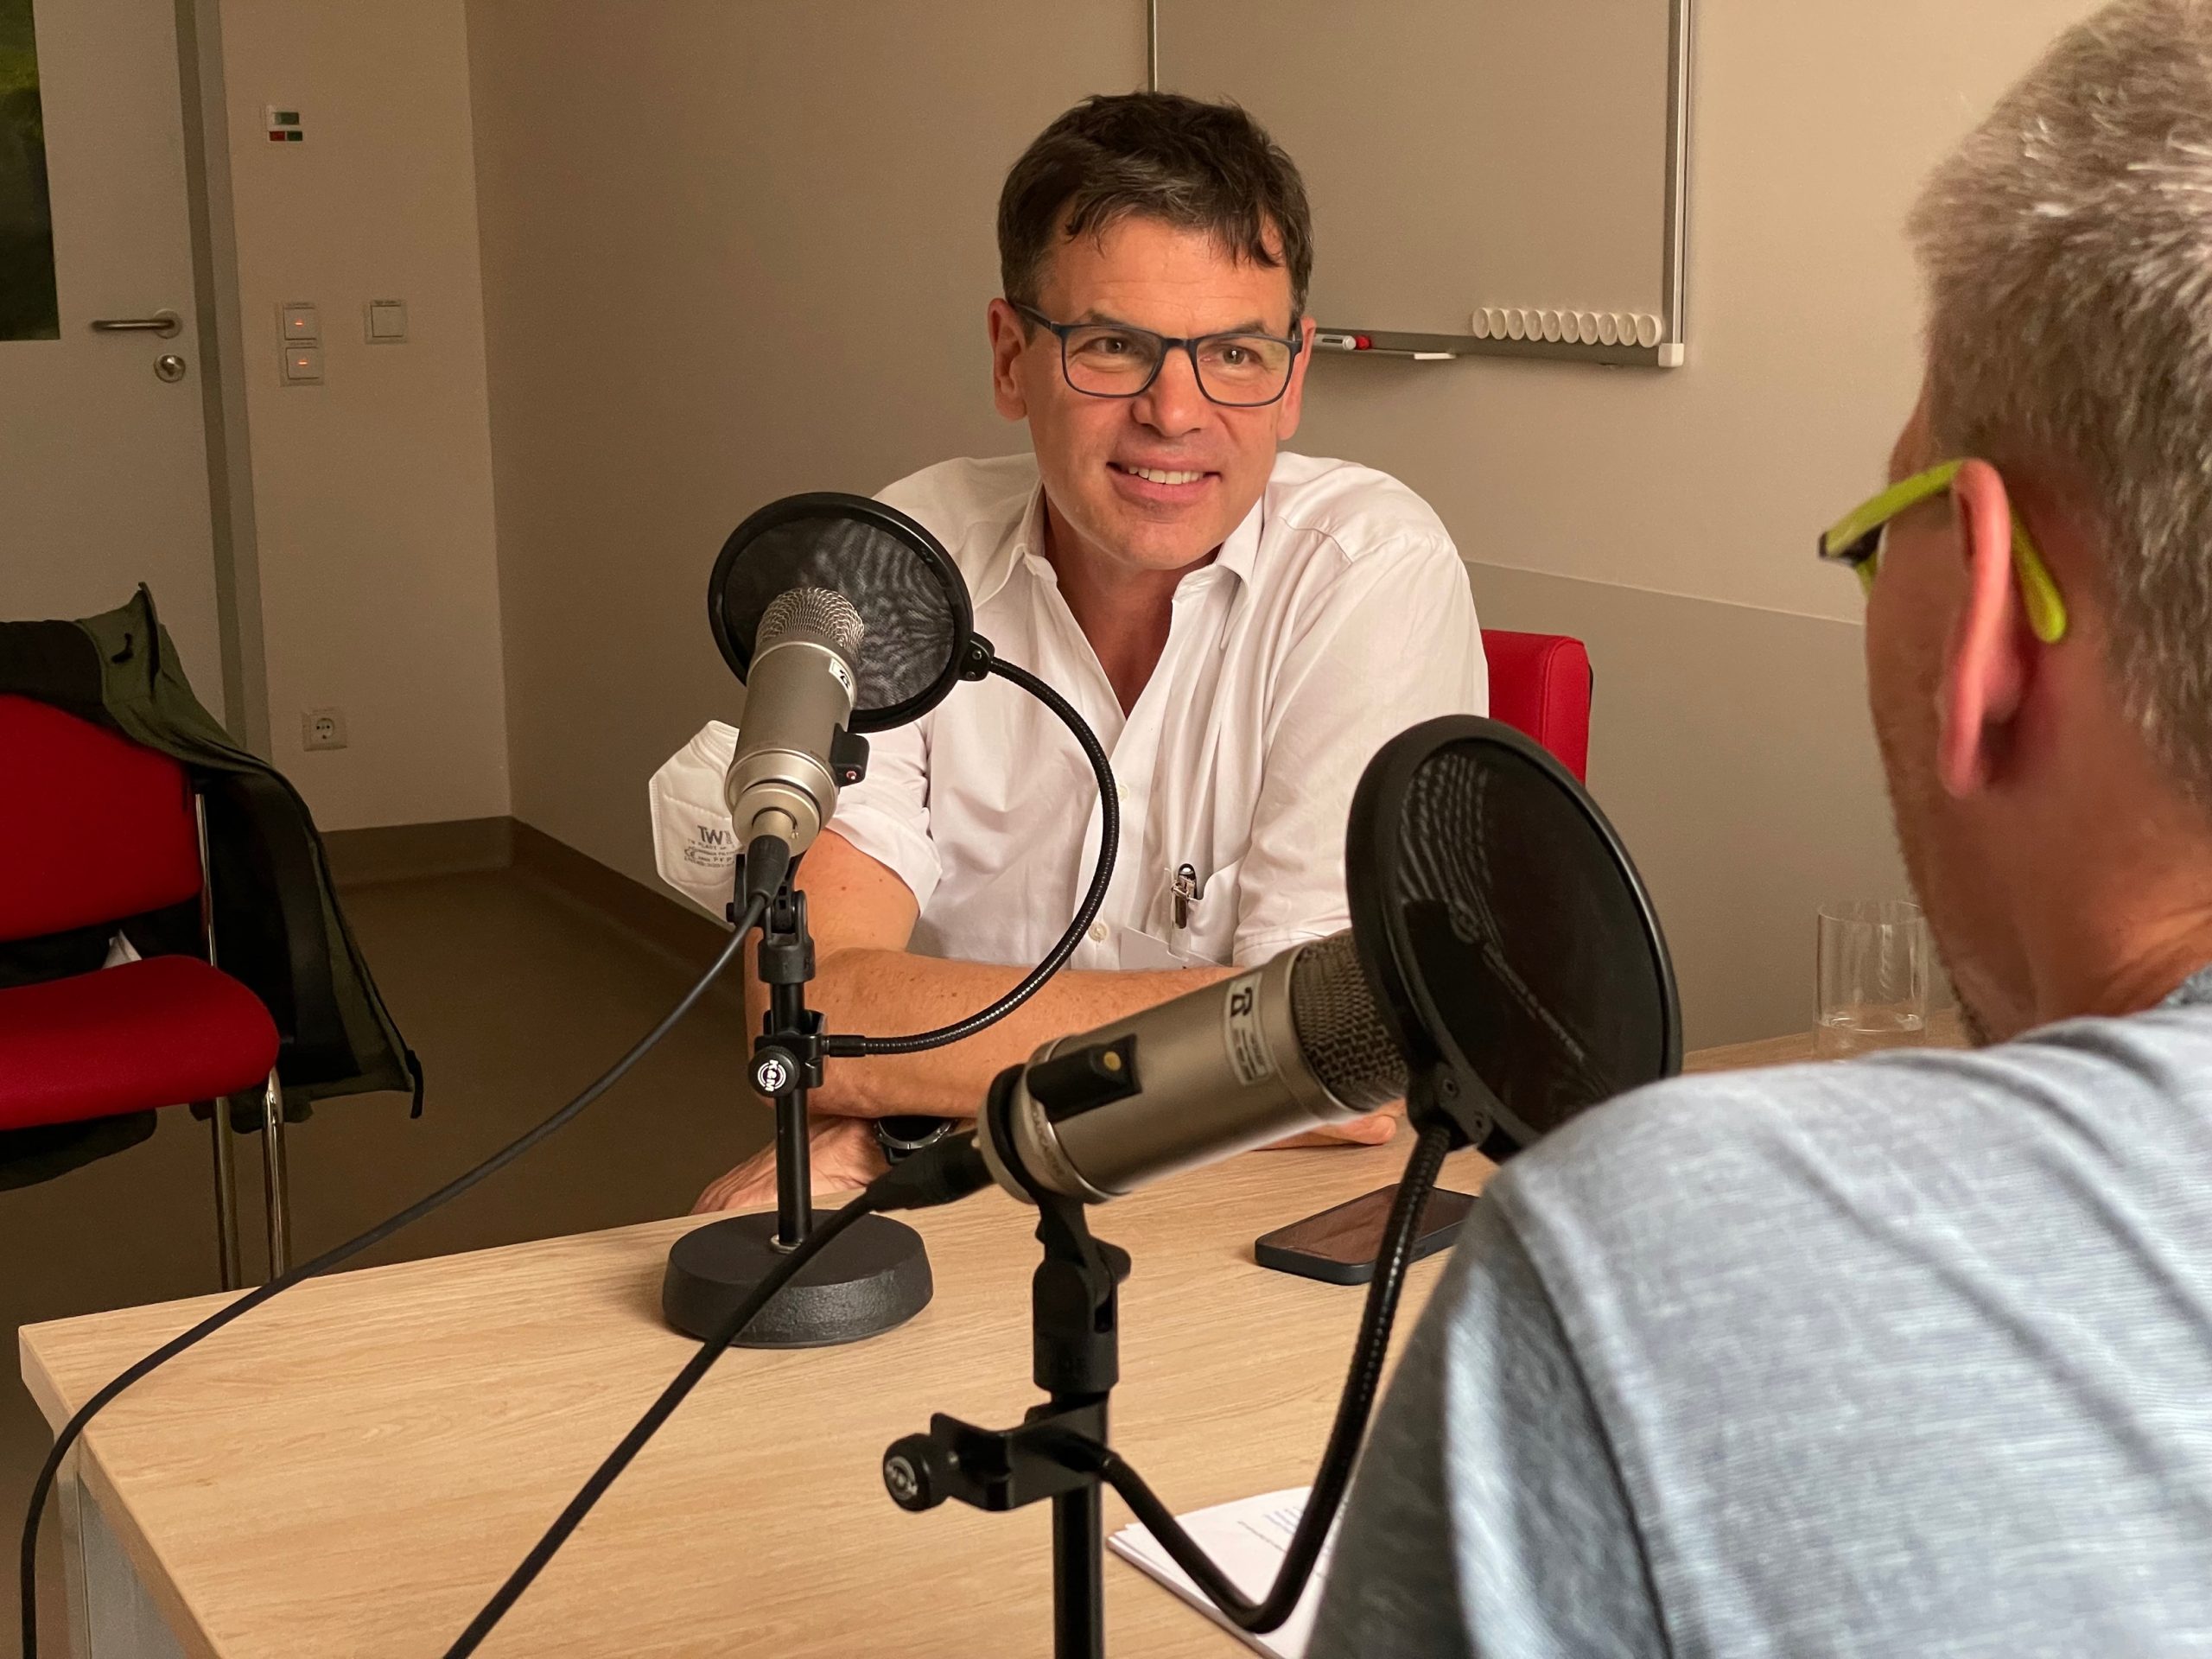 Ein freundlich lächelnder Mann im weißen Arztkittel mit Brille sitzt erzählend hinter einem Mikrofon